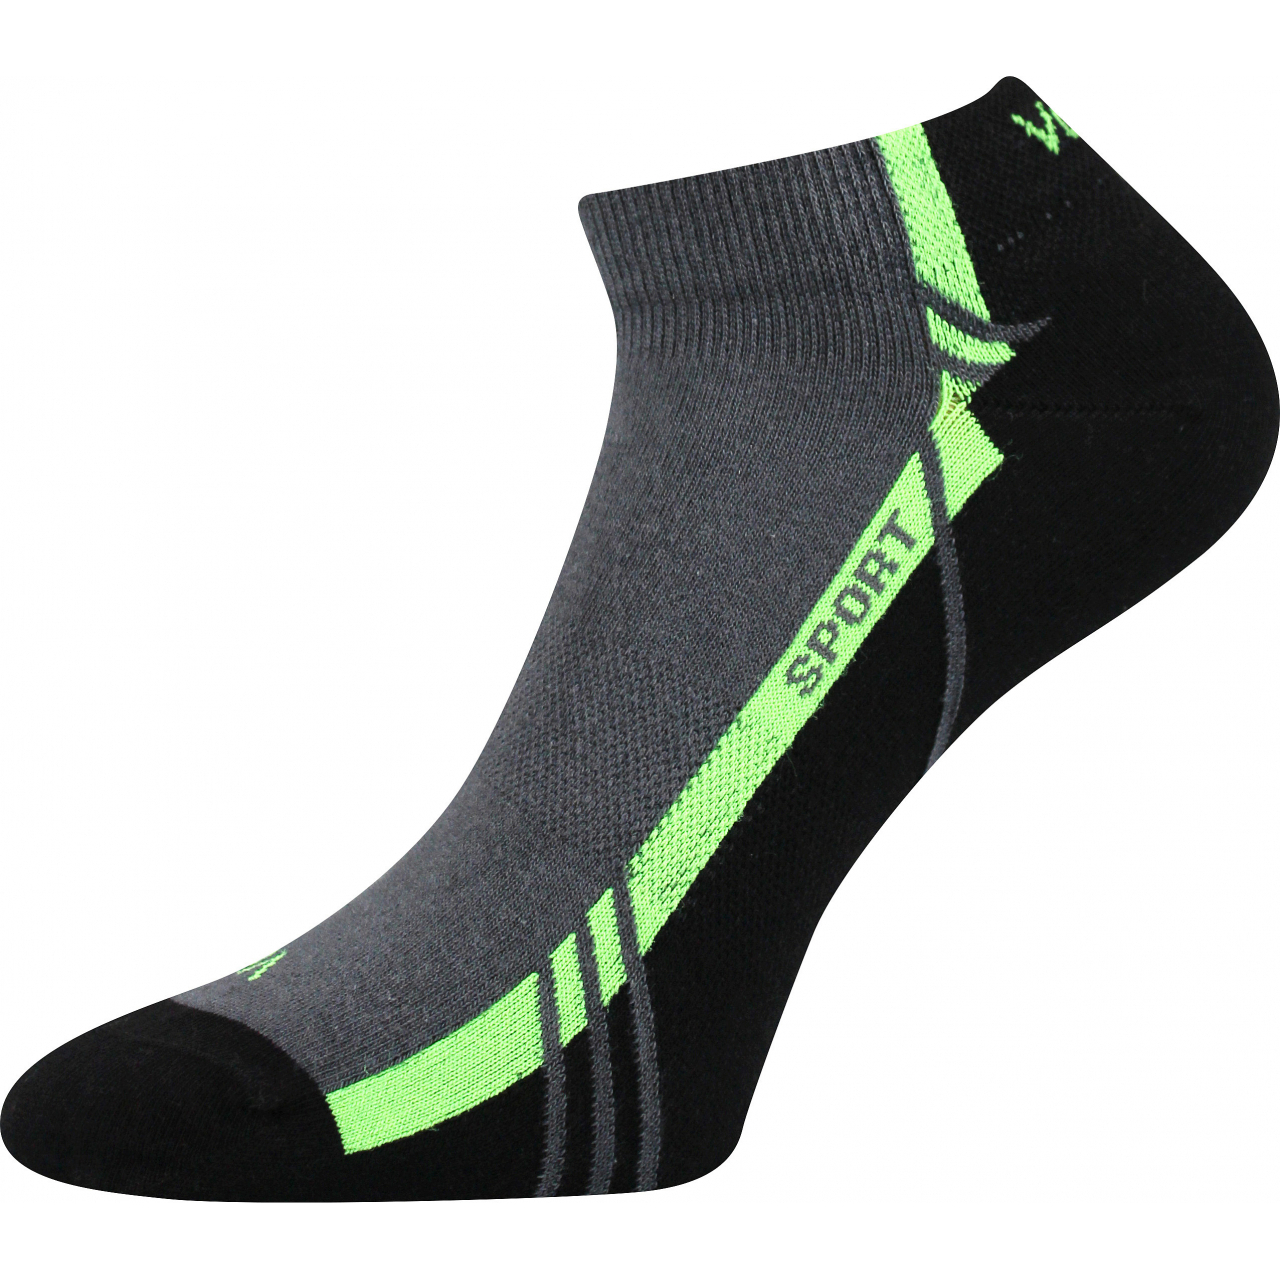 Ponožky unisex sportovní Voxx Pinas - tmavě šedé-zelené, 43-46